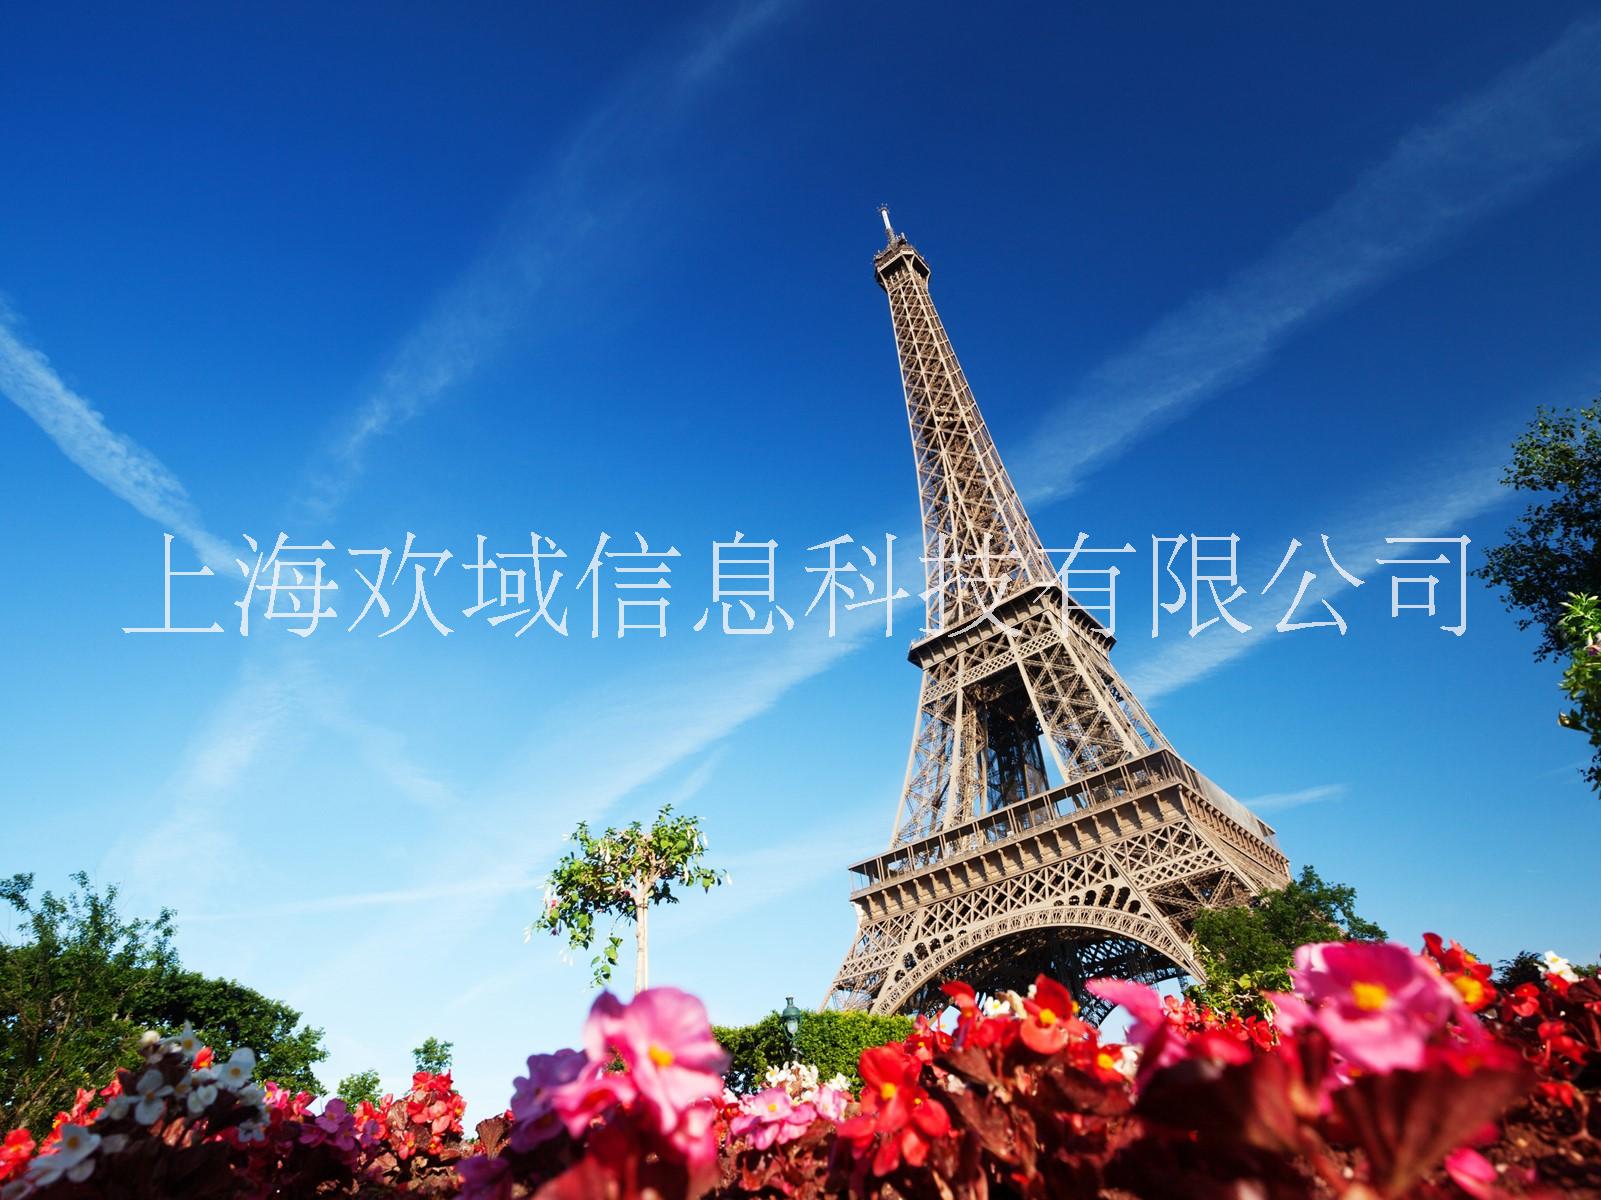 上海市埃菲尔铁塔出租出售厂家广场必备 埃菲尔铁塔出租出售